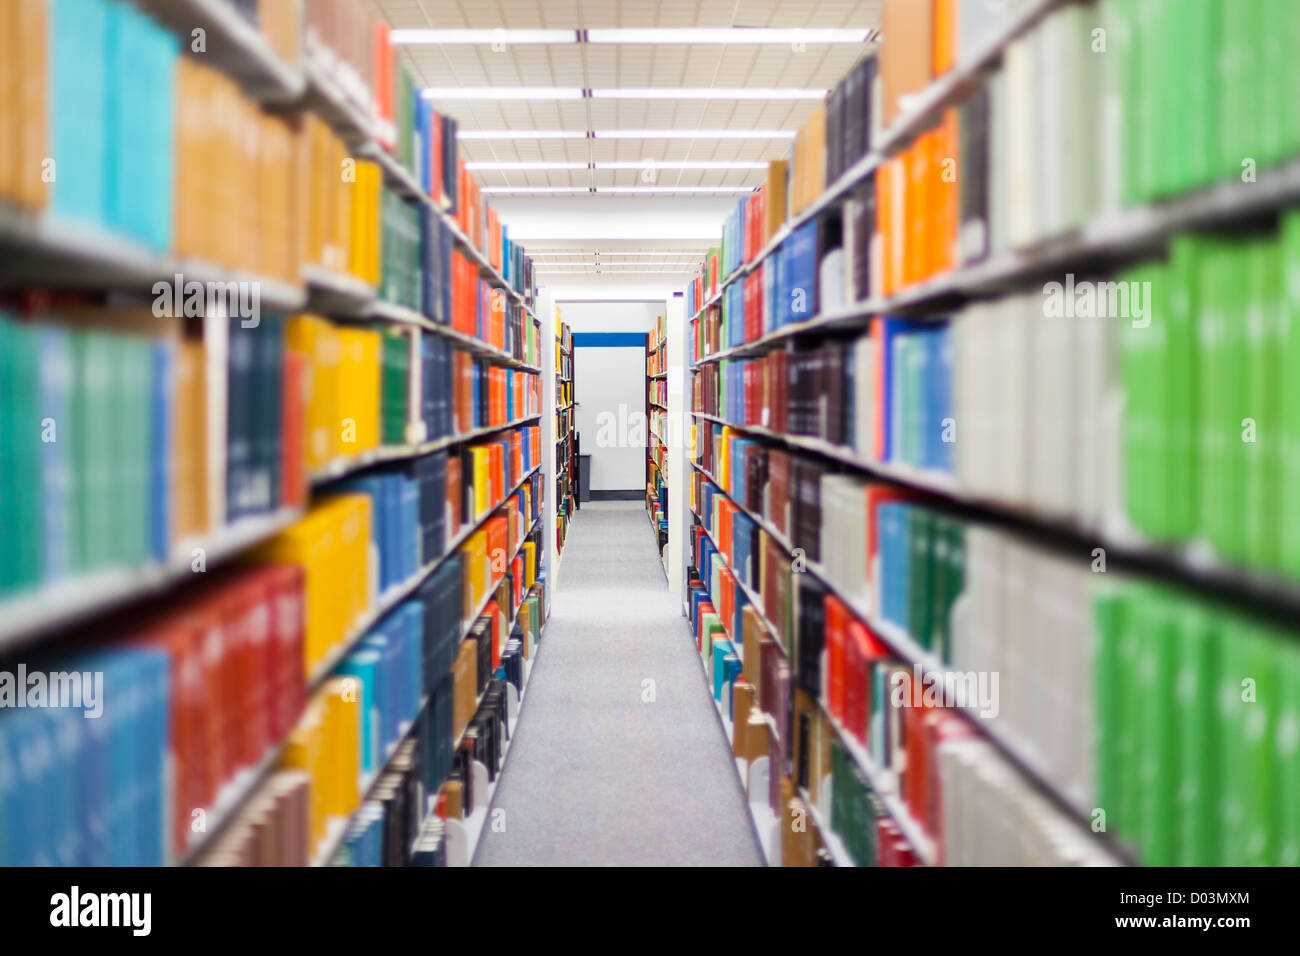 Bücher und Lehrbücher, gezeigt in einer Schulumgebung / Bibliothek-Einstellung (Buchbinder sind nach Maß, nicht das Urheberrecht) Stockfoto